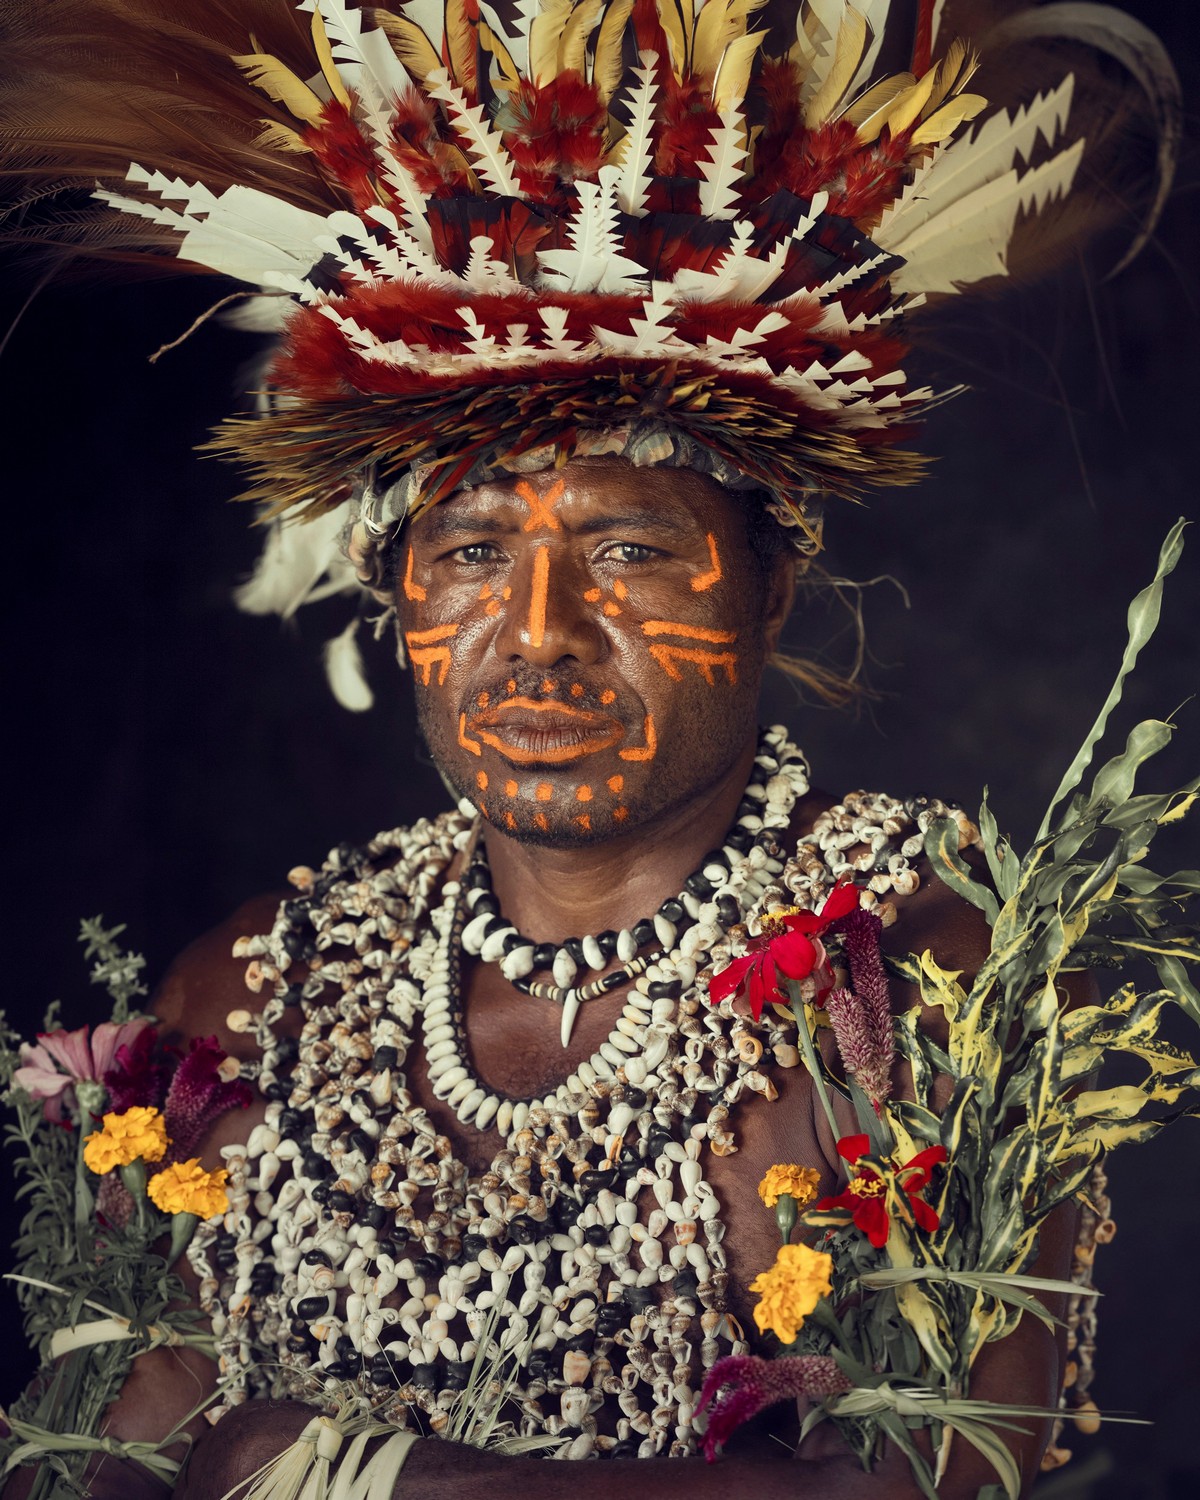 Фотографии представителей разных исчезающих народов планеты коренные народы,страноведение,этнография